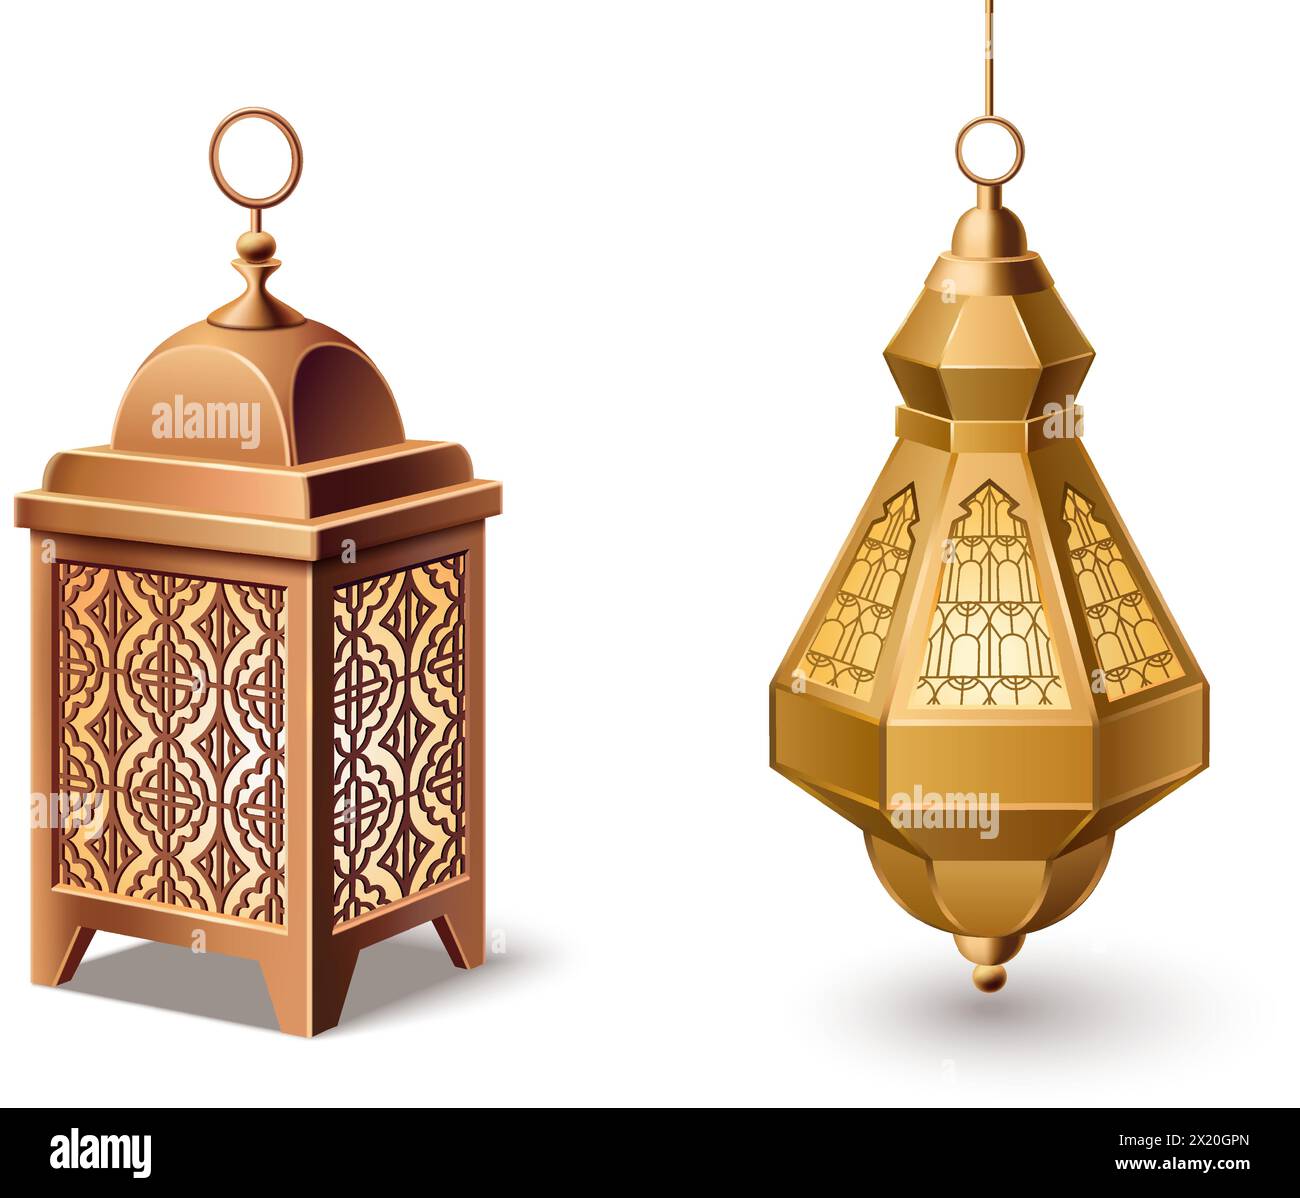 Tradizionale lanterna islamica con ornamento orientale per il Ramadan o Eid Mubarak congratulazioni. Set di illustrazioni vettoriali 3d realistiche con lampada in metallo musulmano dorato con motivo arabo appeso e in piedi. Illustrazione Vettoriale